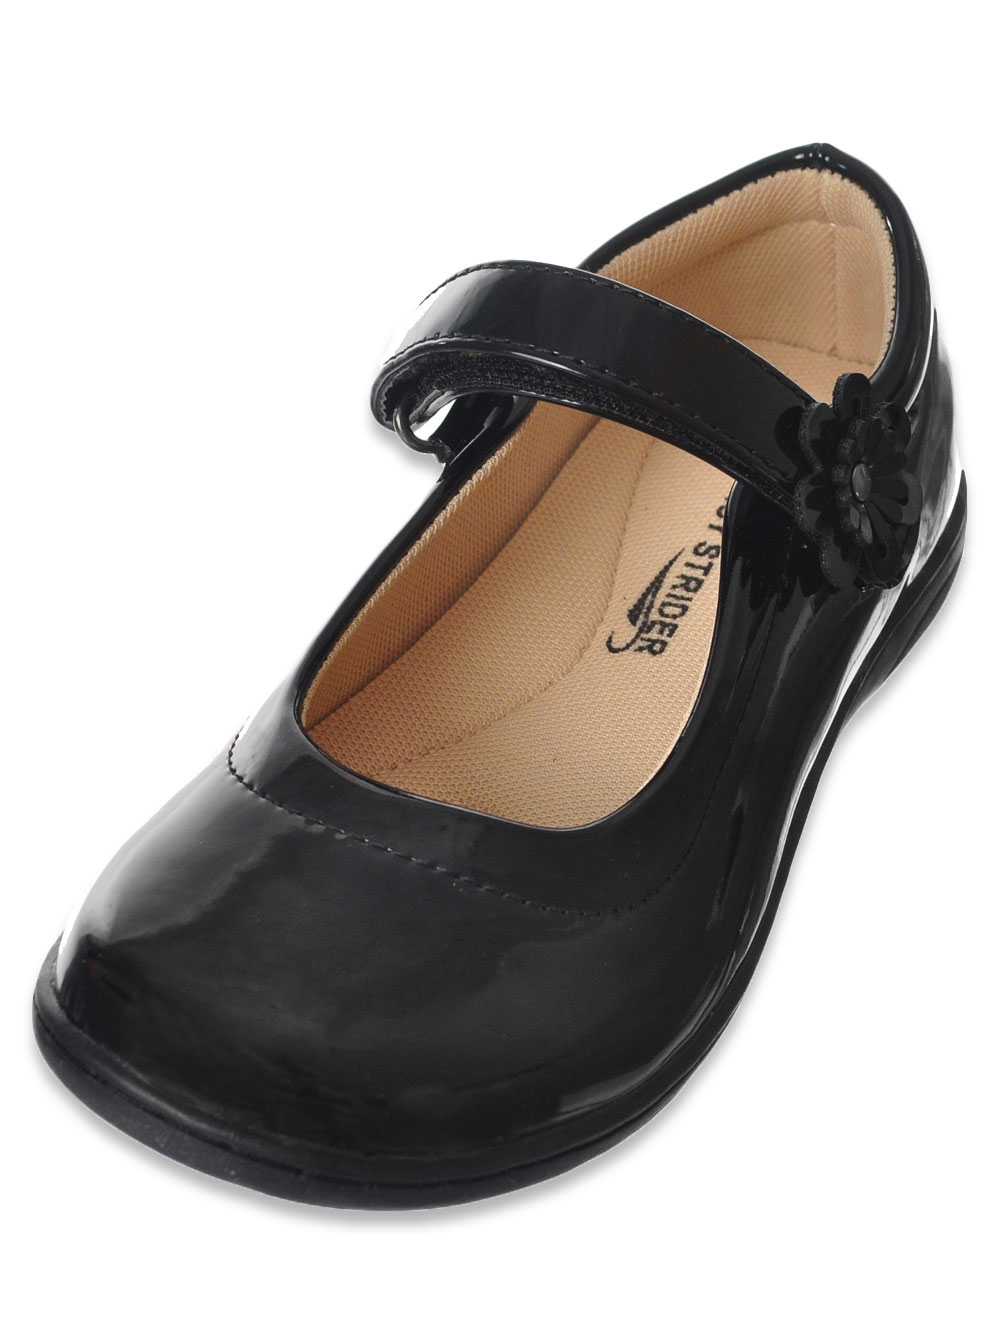 girls black mary jane shoes